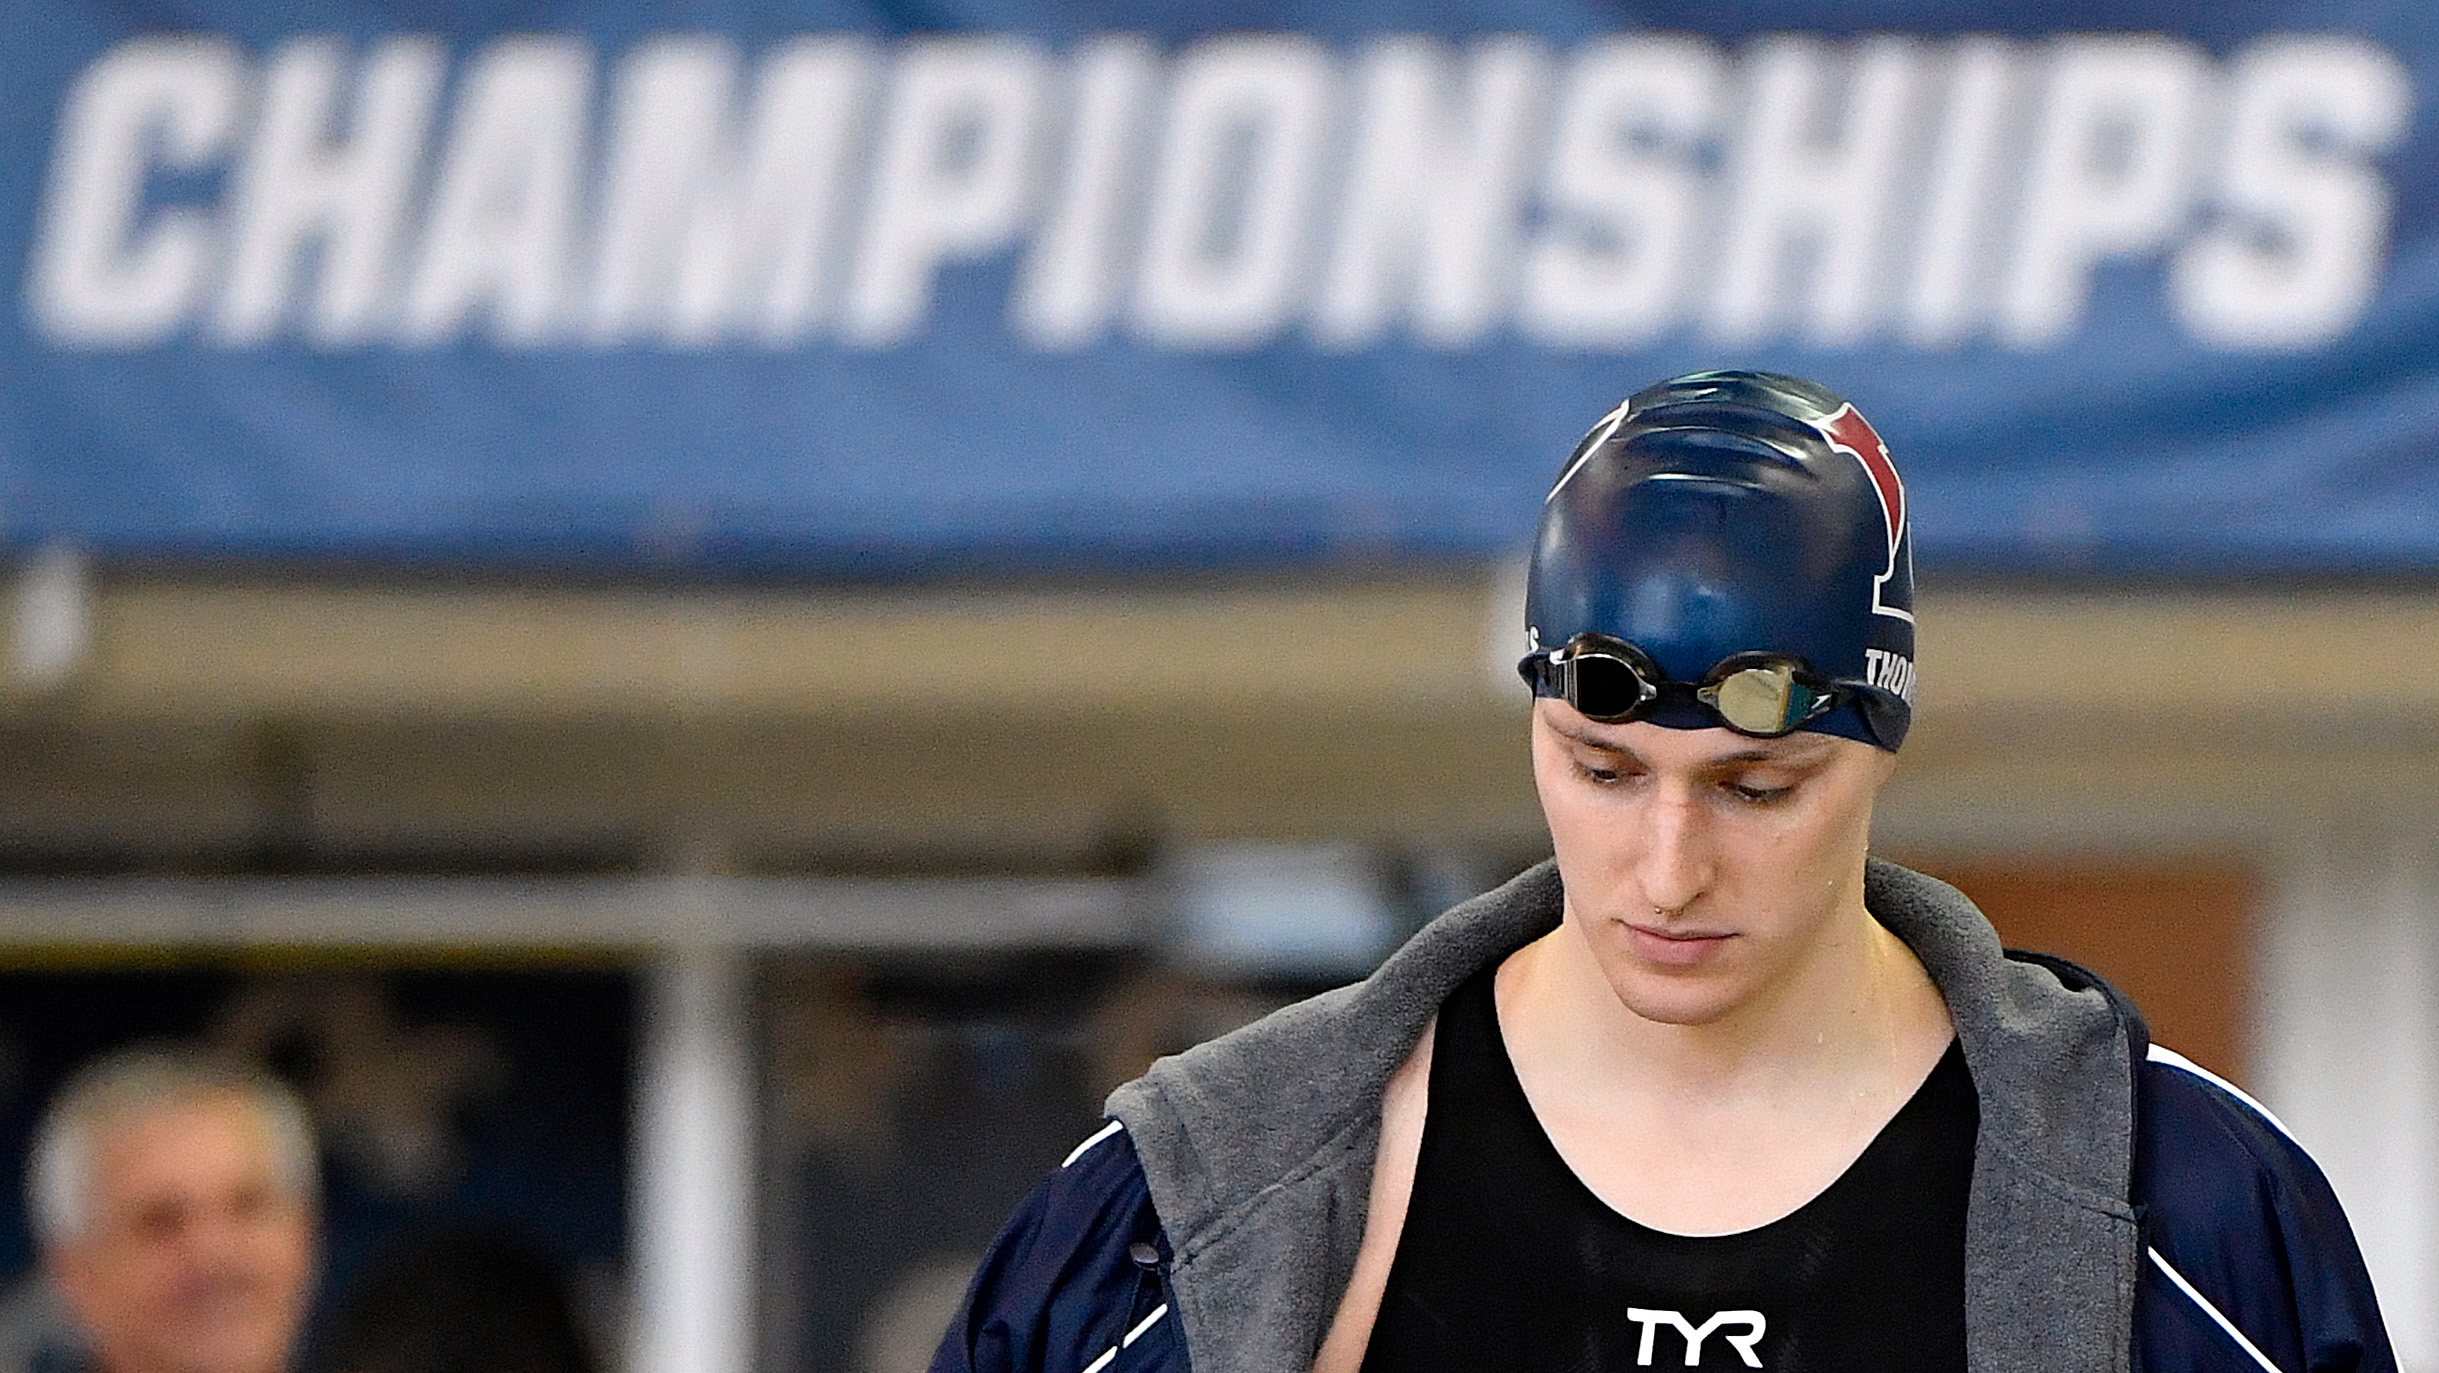 Lia Thomas tem sido um nome em foco na natação dos EUA mas não poderá marcar presença na competição feminina dos Jogos de Paris-2024 à luz dos novos regulamentos